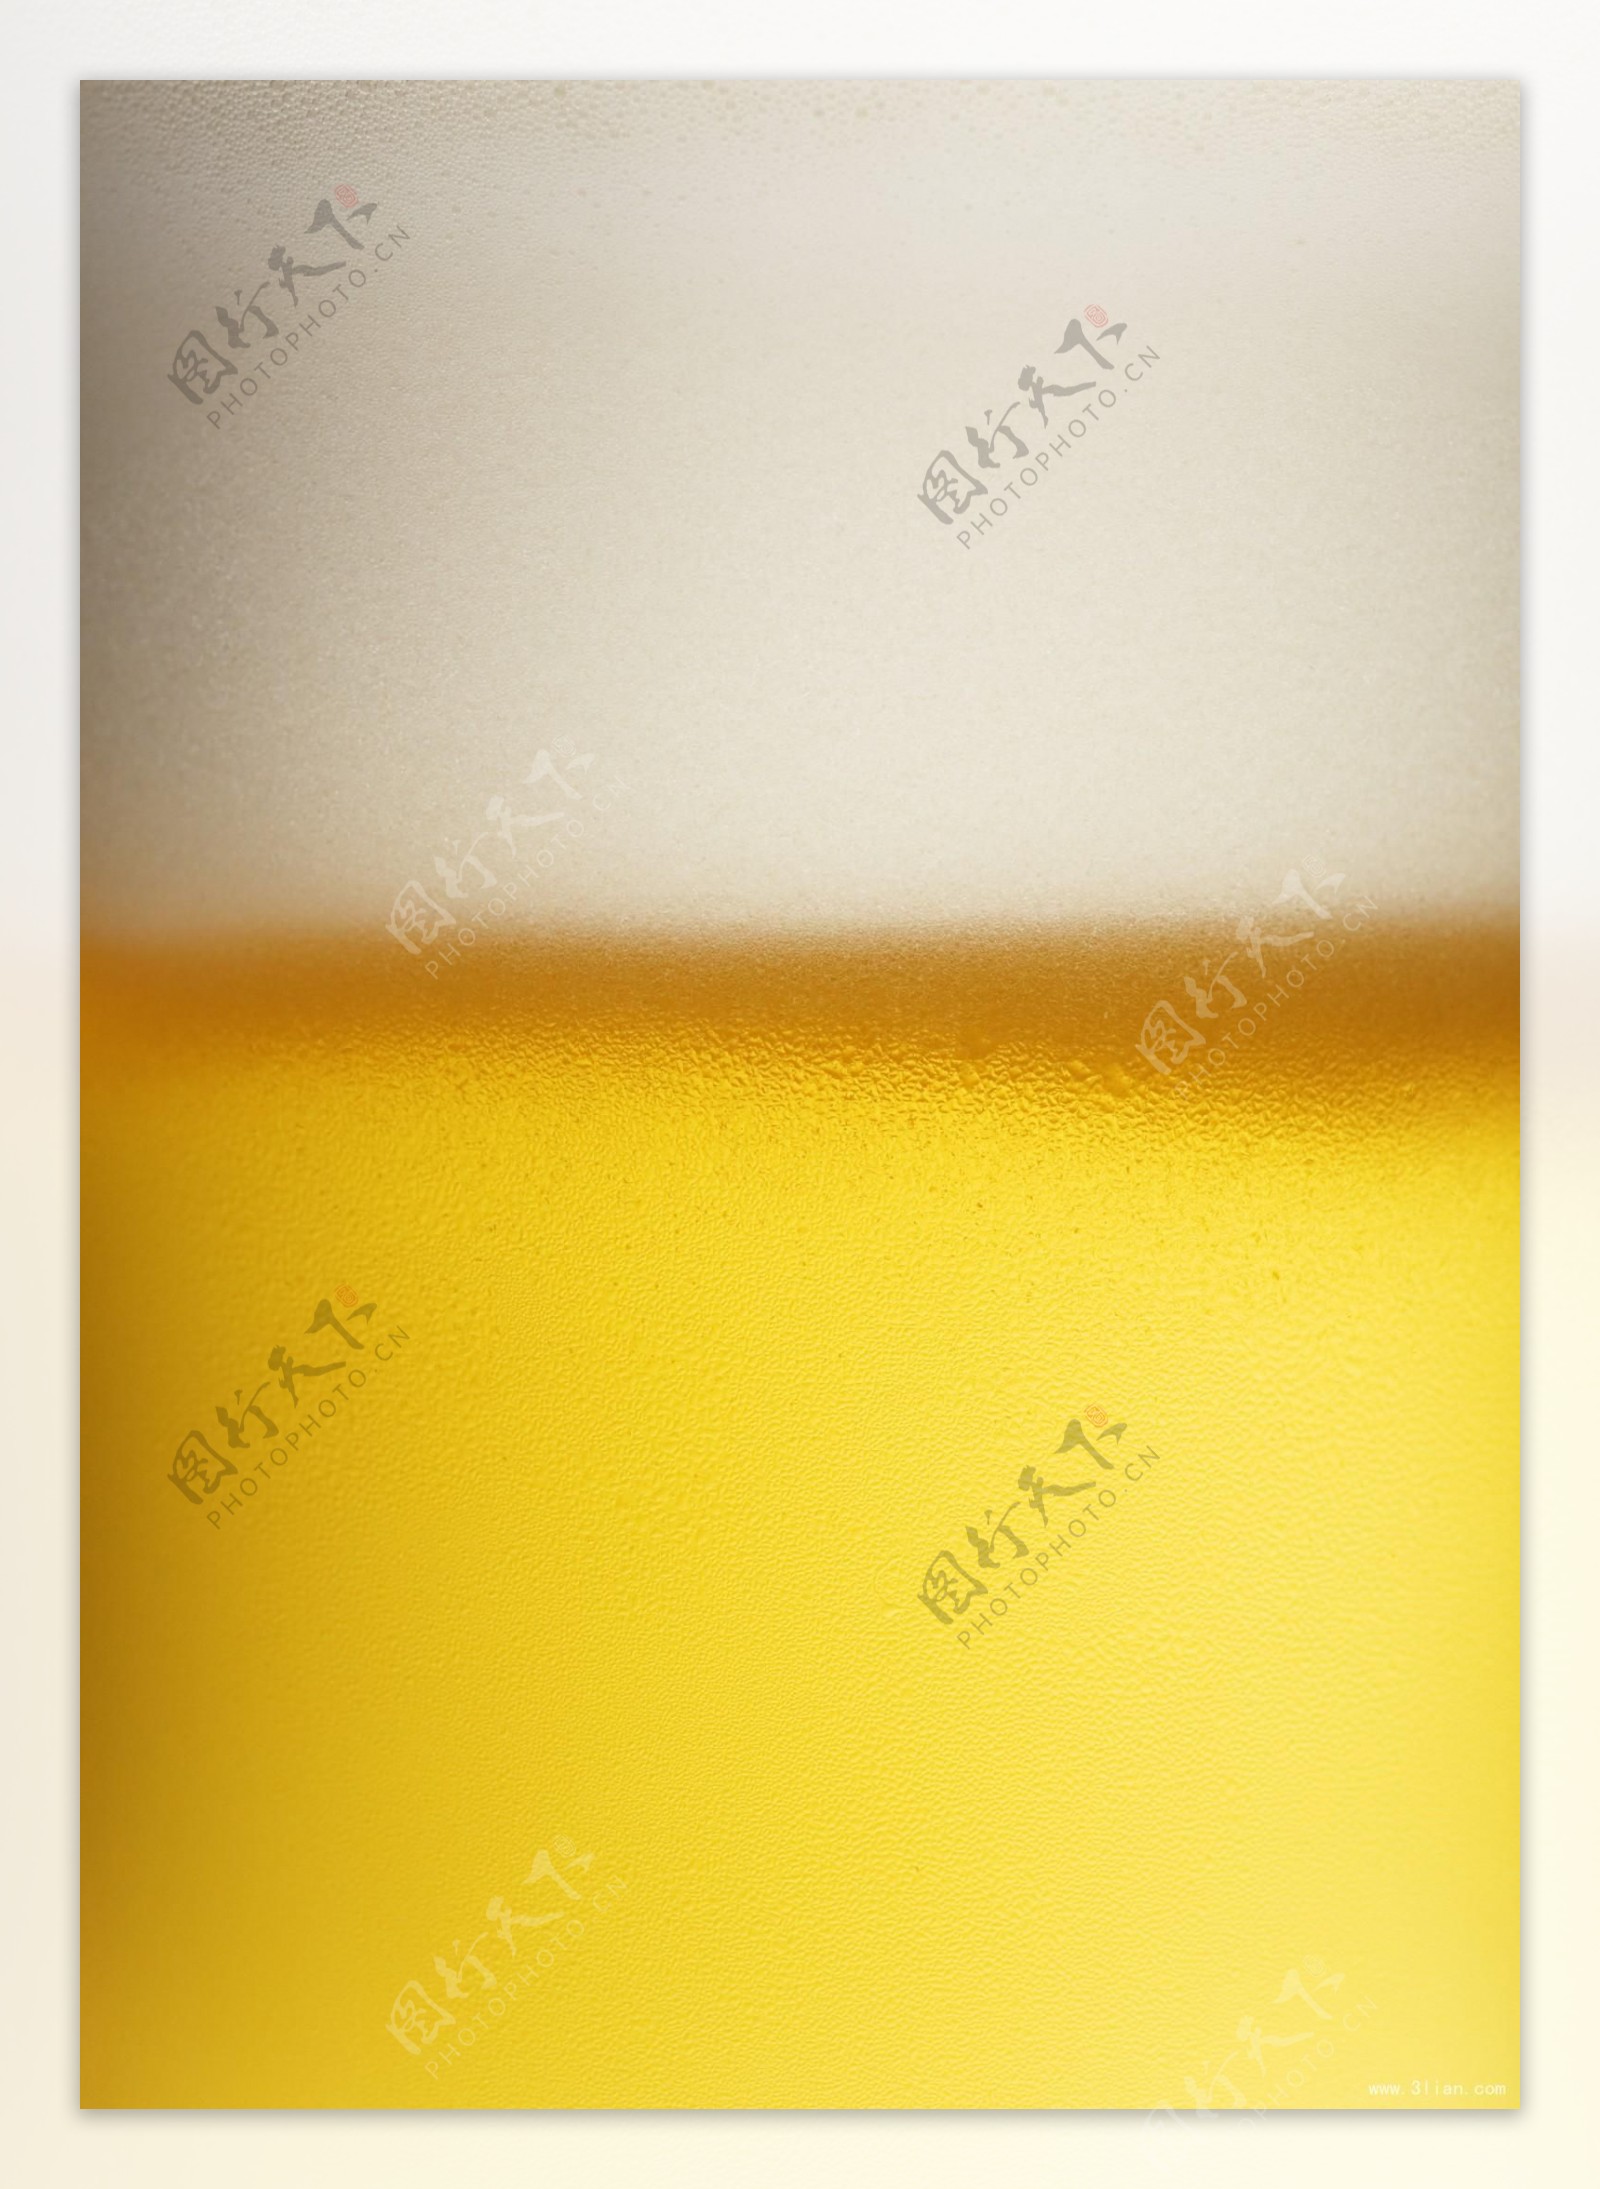 啤酒底纹图片